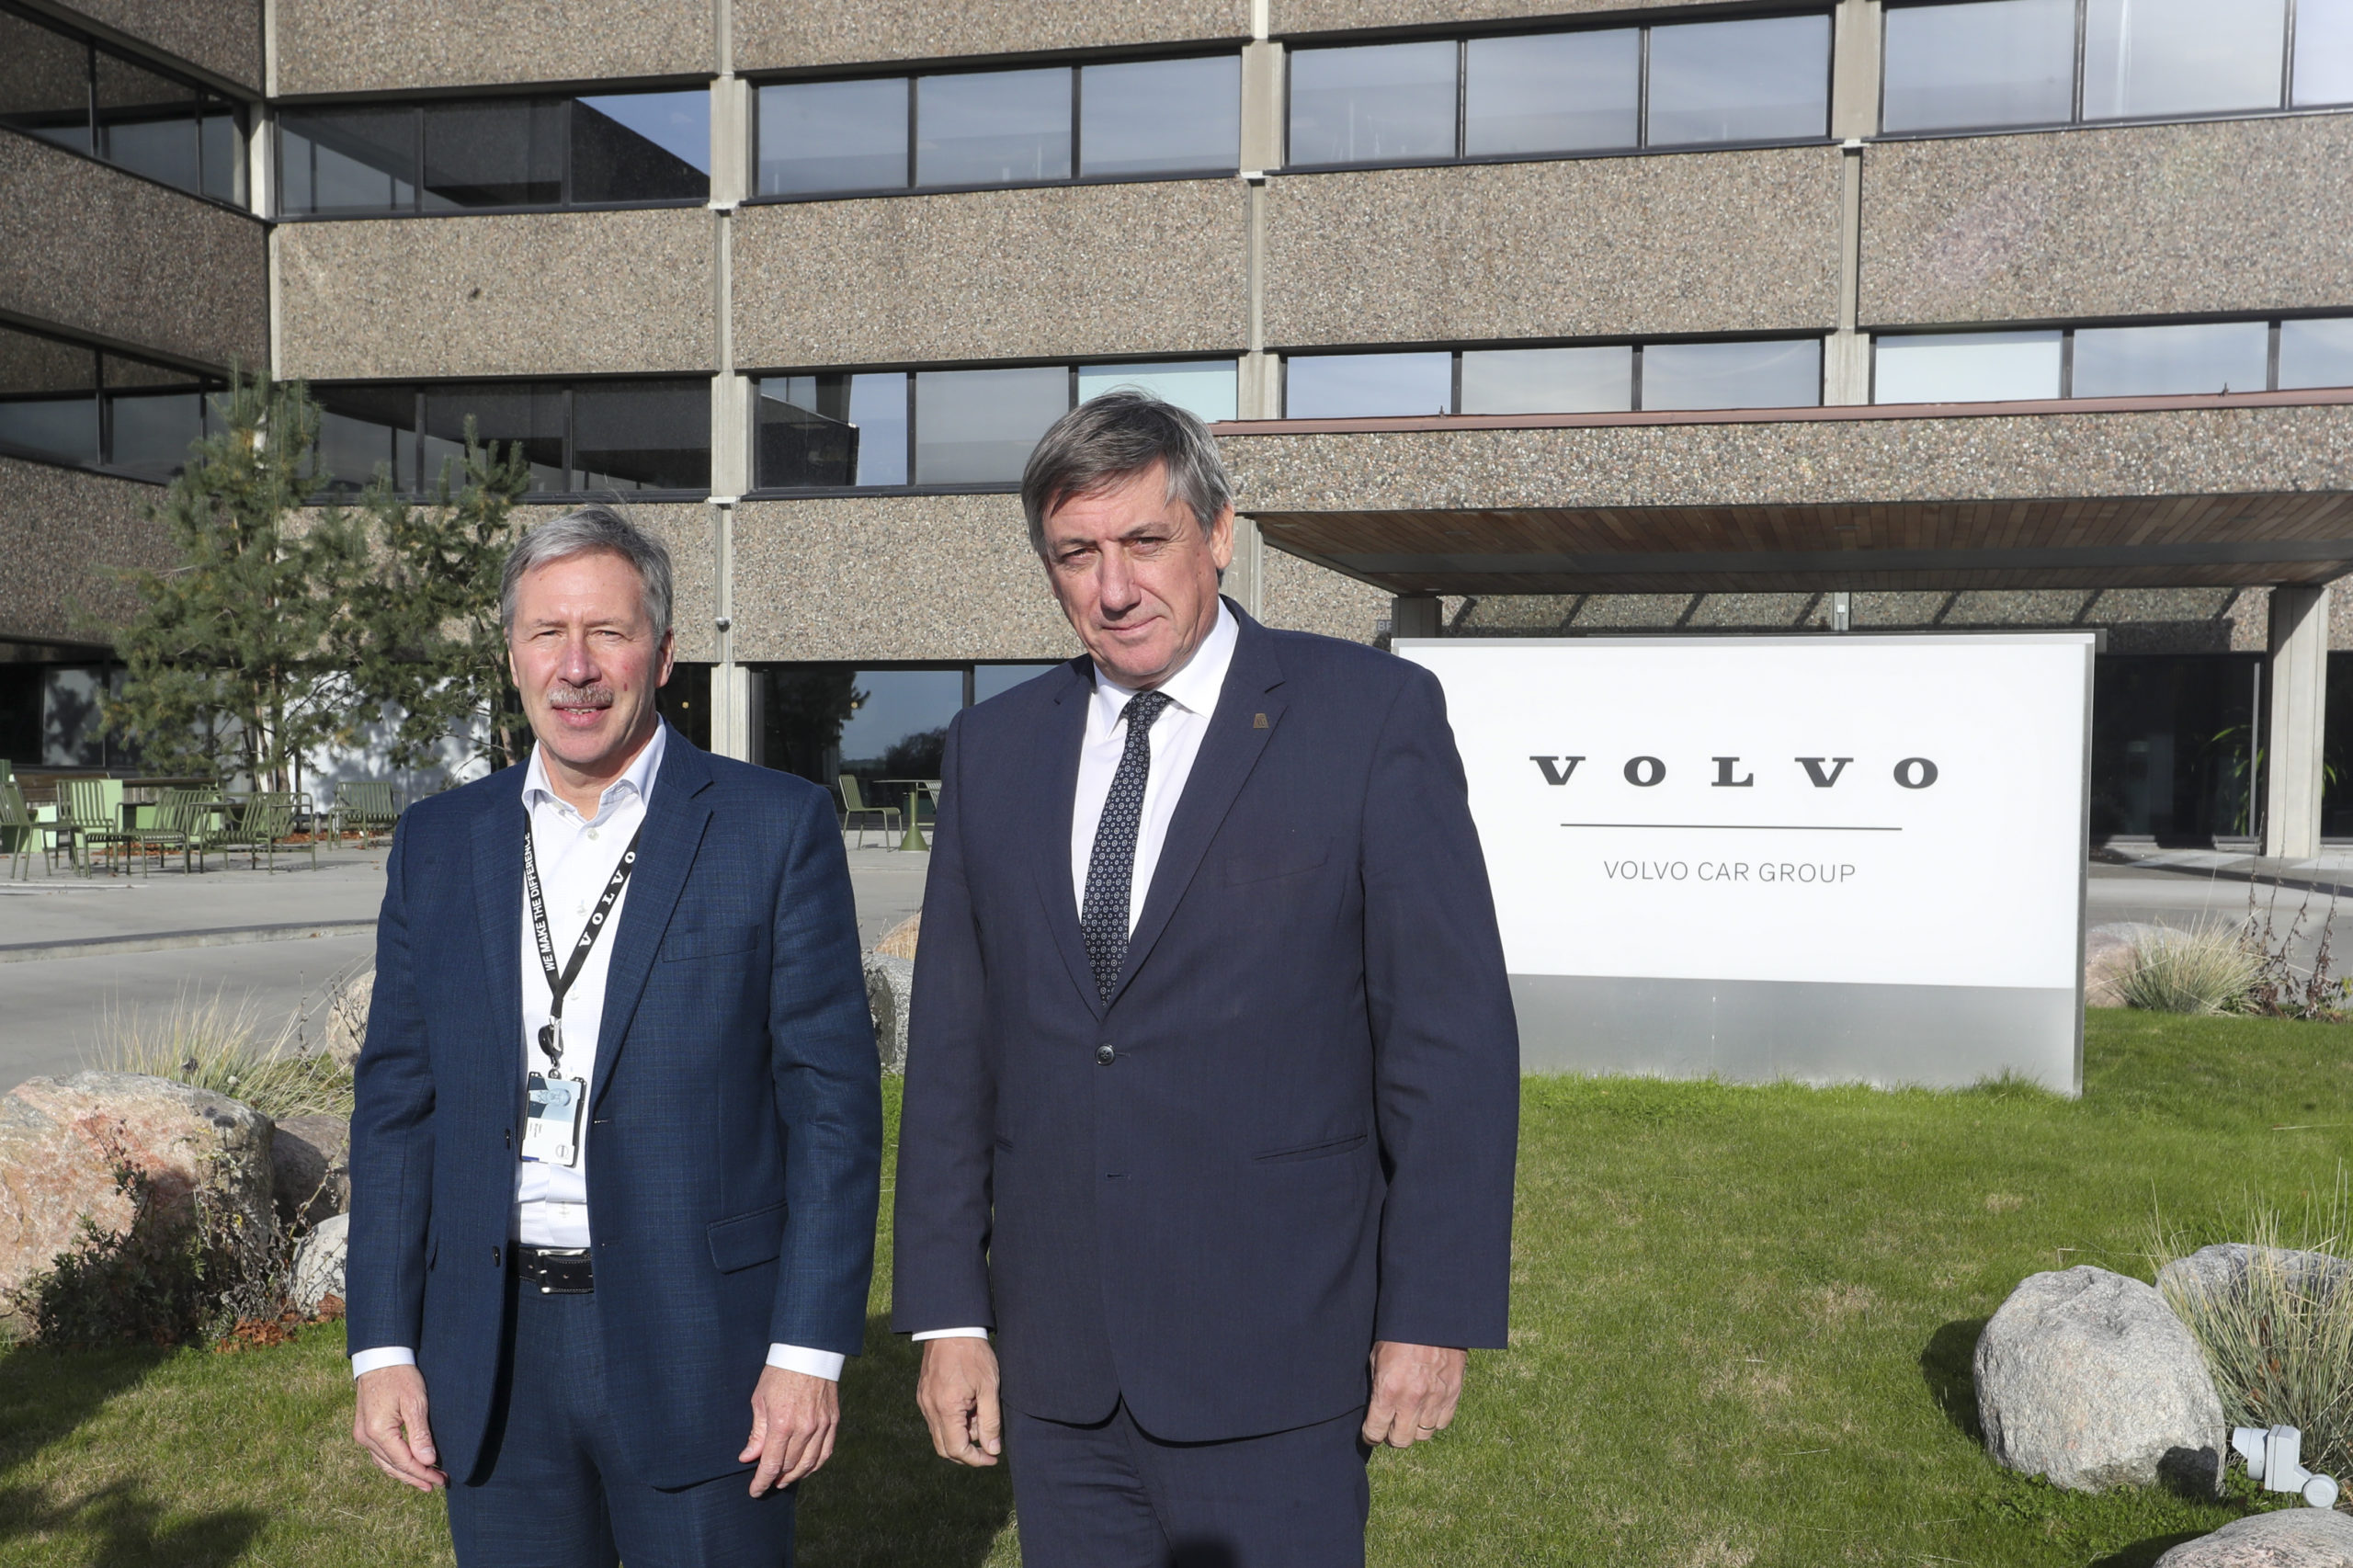 Une nouvelle usine de batteries Volvo à Gand ?